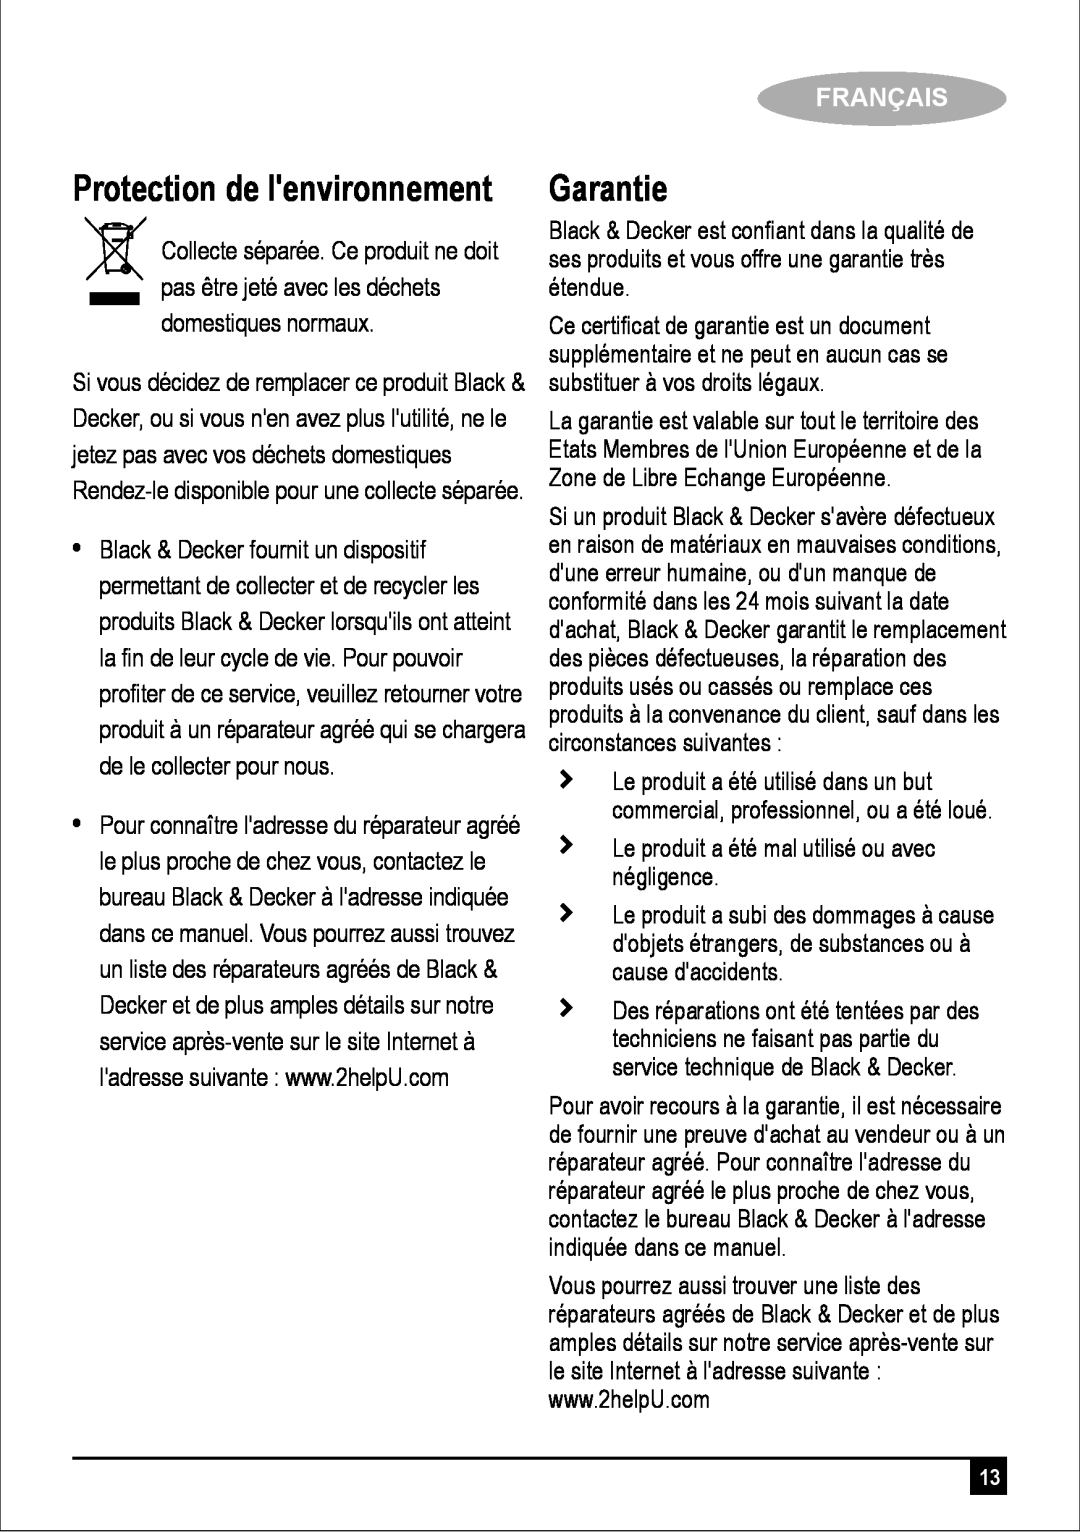 Black & Decker DK35 manual Garantie, Protection de lenvironnement, Français 